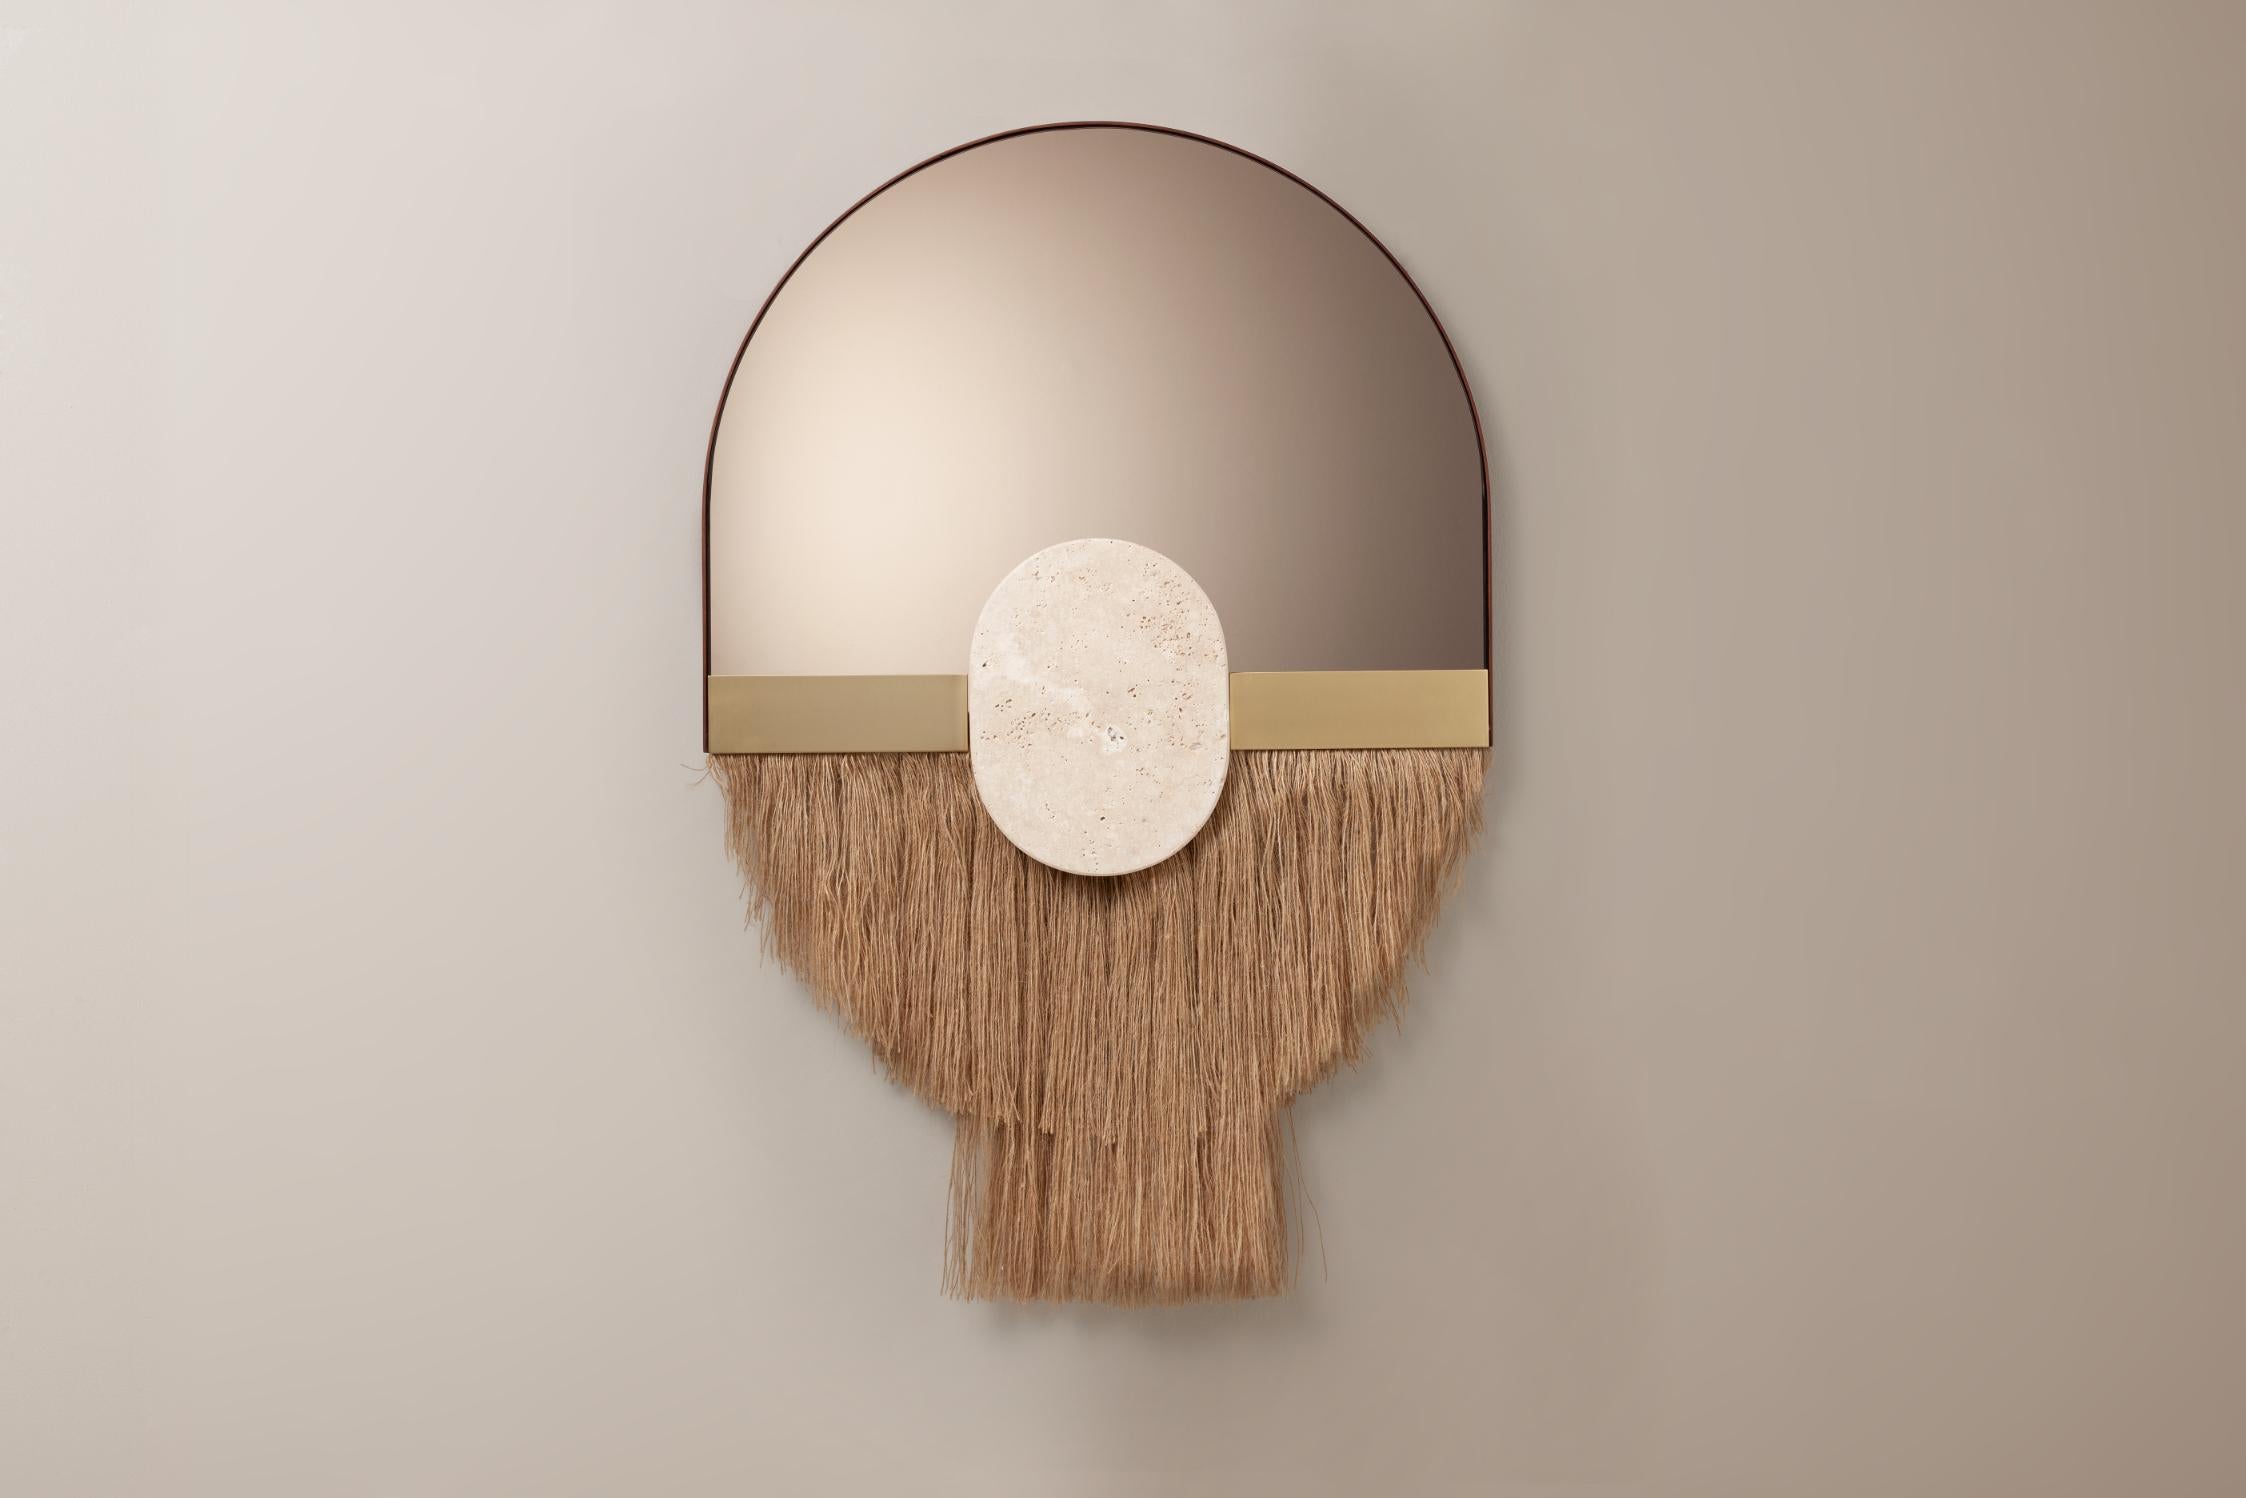 Soul Ecru-Latte-Spiegel von Dooq
Abmessungen: ø 30 x H 40 cm
MATERIALIEN: Glas, Marmor.

Die durch die perfekte Kombination von Farbe, Energie und Form geschaffenen Souk-Spiegel spiegeln die Einflüsse der überwältigenden und visuell faszinierenden